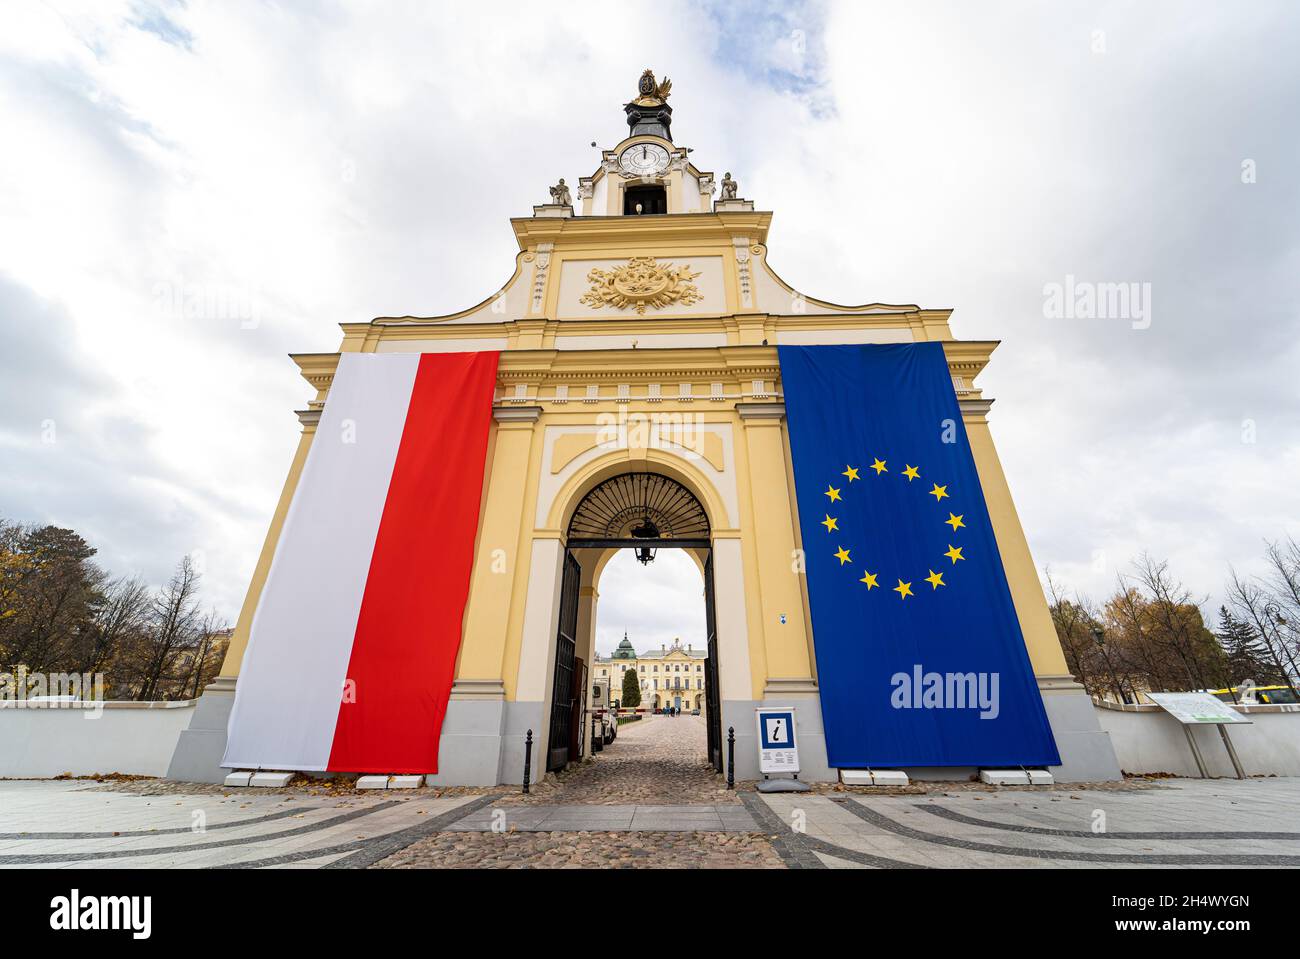 Drapeaux polonais et de l'Union européenne sur la porte d'entrée du Palais Branicki à Bialystok, Pologne.Les Polonais défendent l'adhésion à l'UE en craignant Polexit.Bialystok, Pologne - 22 octobre 2021. Banque D'Images